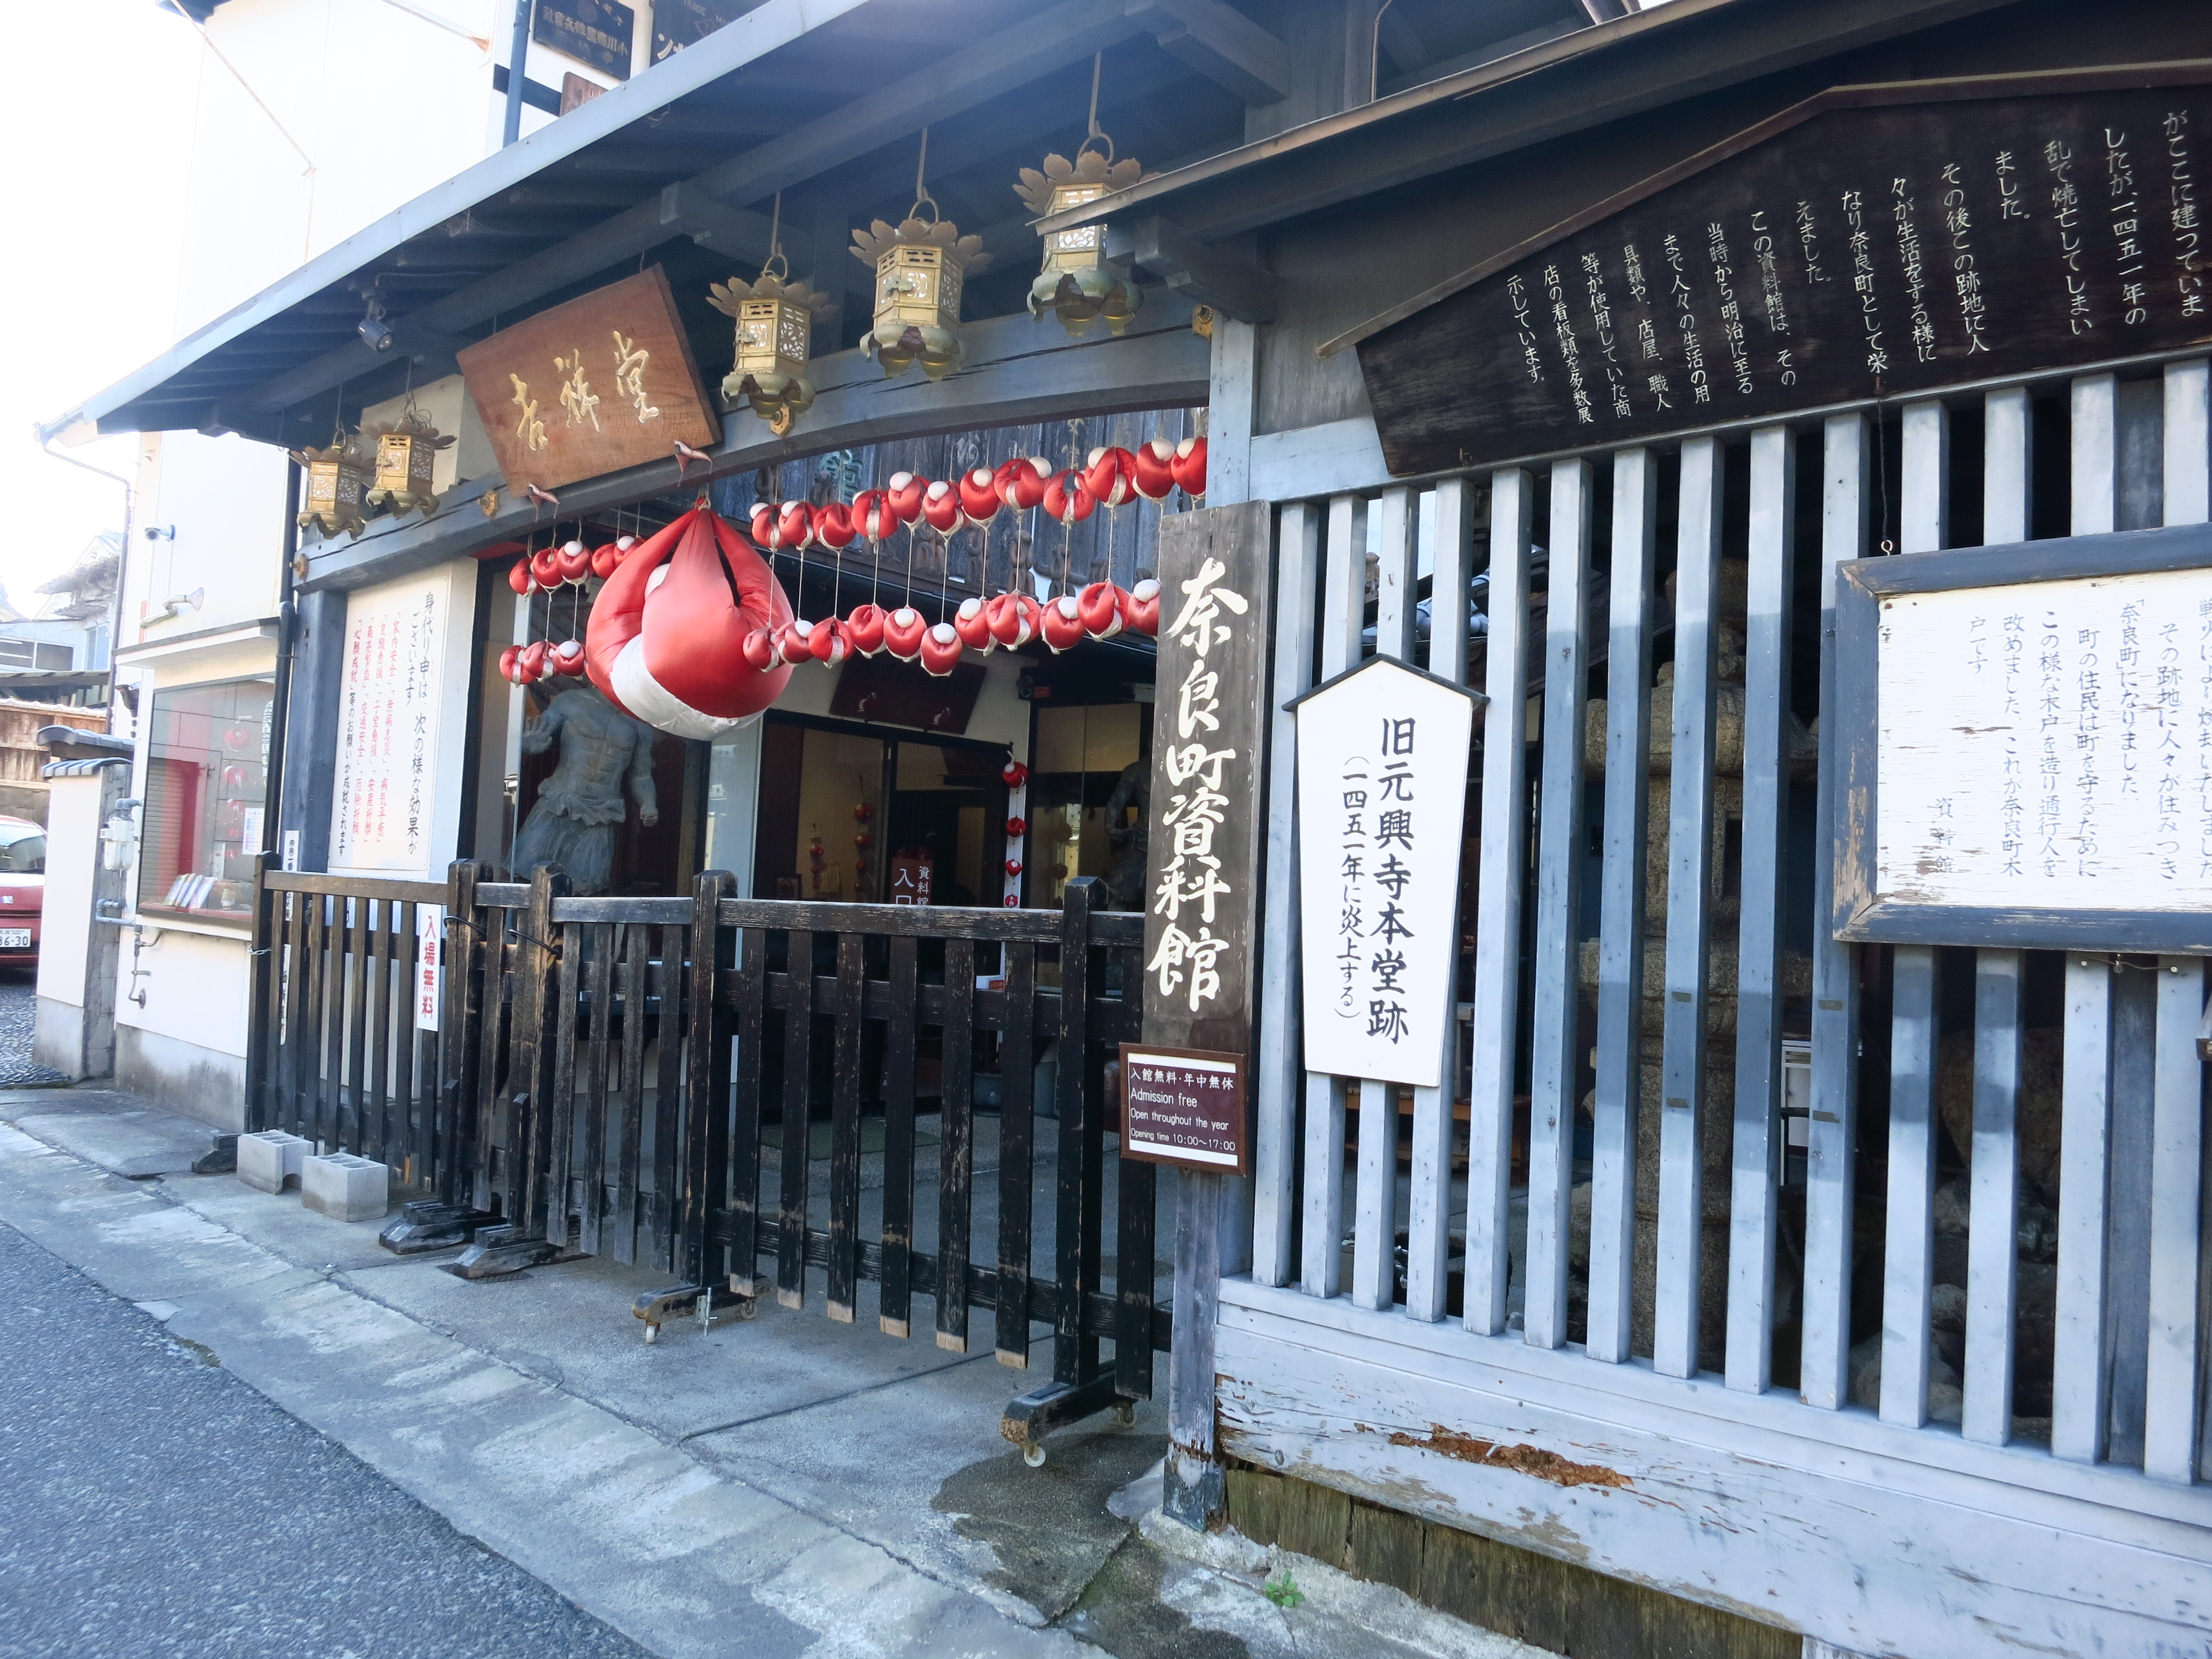 こちらは奈良町資料館。「旧元興寺本堂跡」とのことで、元々は元興寺の本堂がここにあったそうですが…